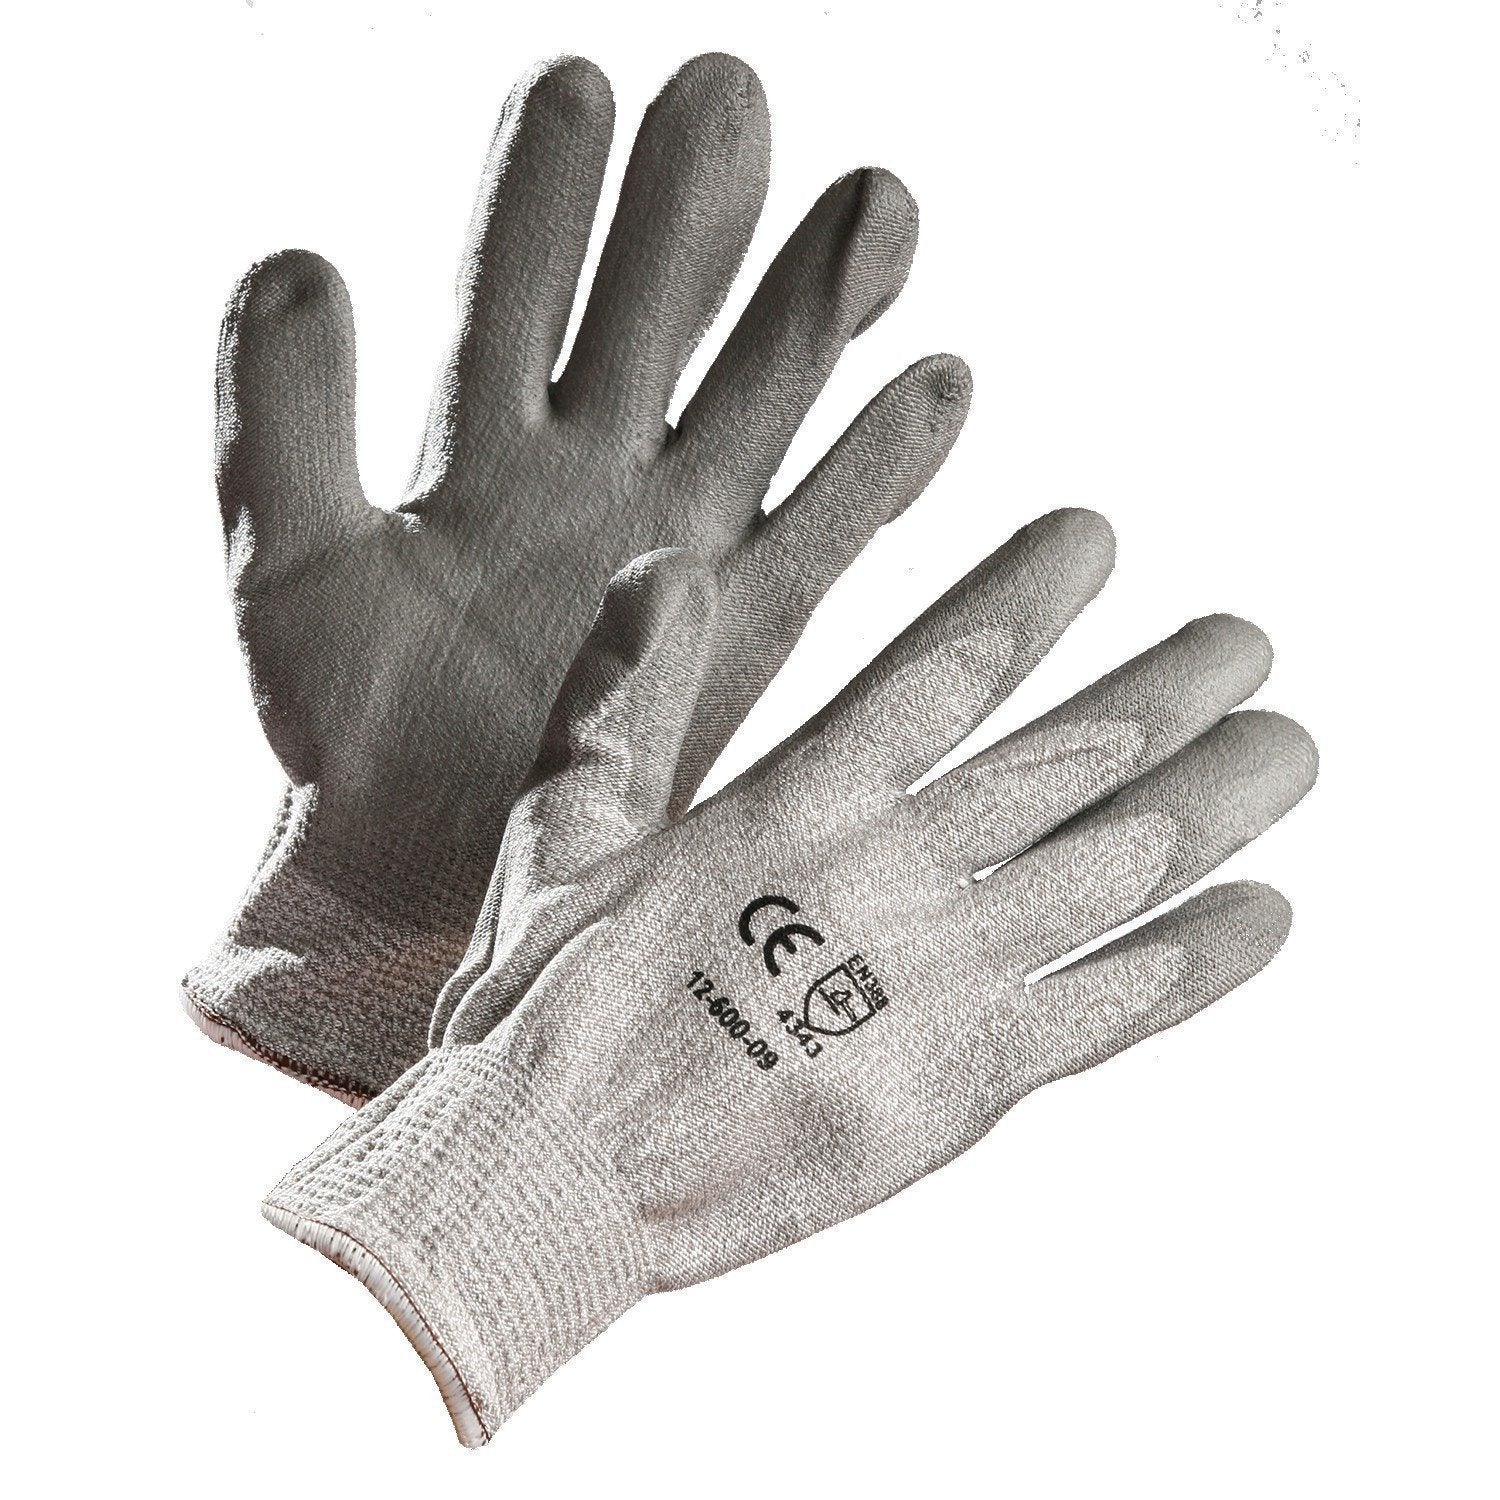 https://www.forcefieldcanada.com/cdn/shop/products/grey-hppe-cut-resistant-glove-polyurethane-palm-coated_1800x1800.jpg?v=1707338086